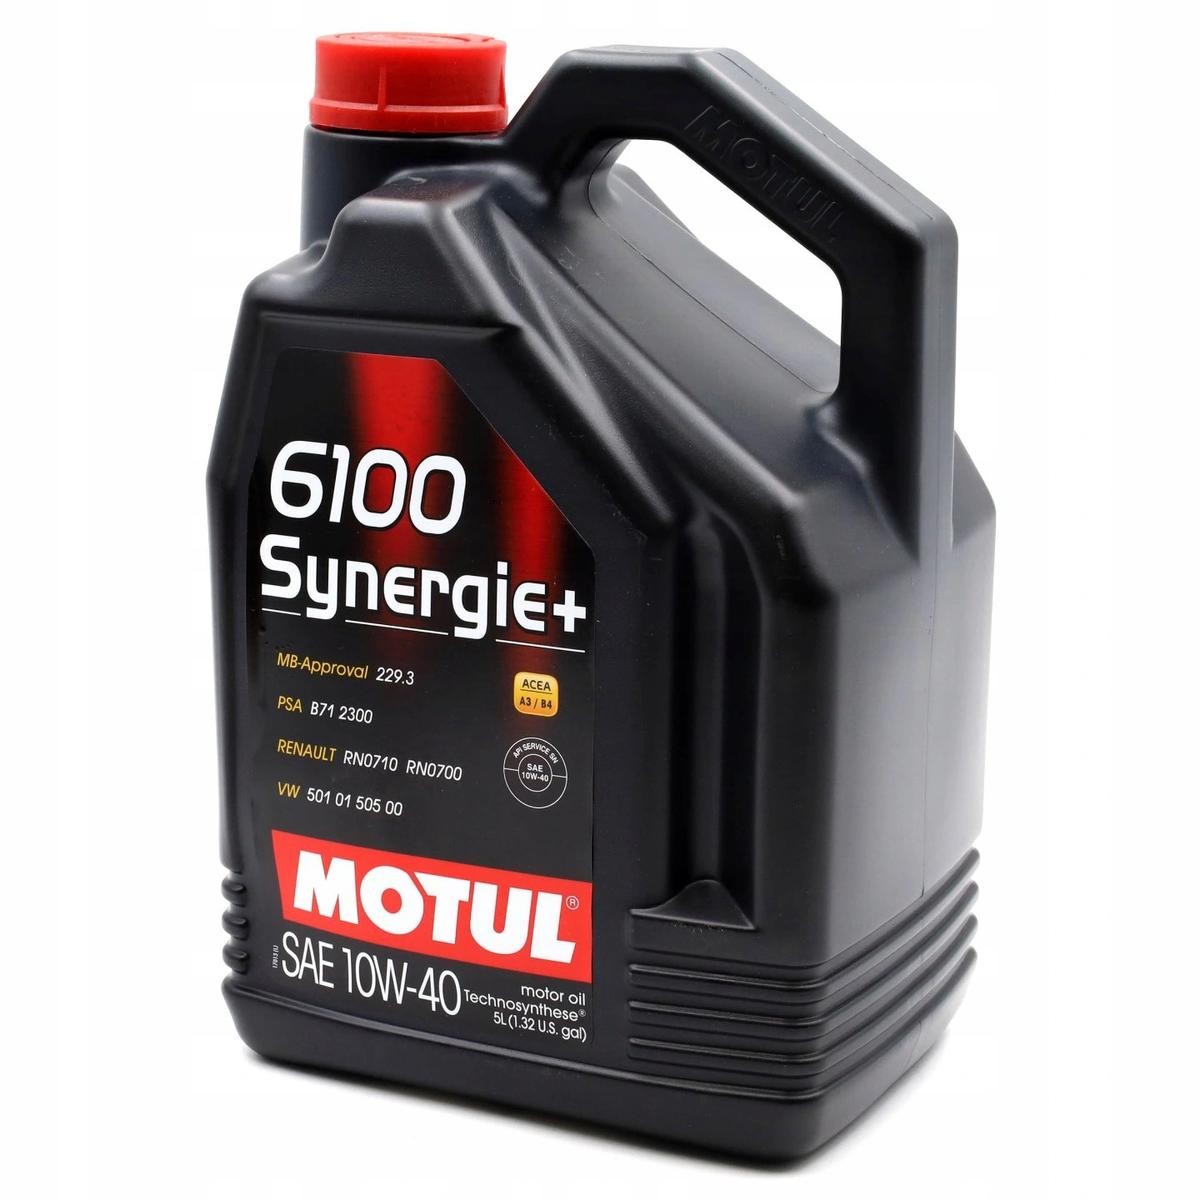 Skoda Oleje a kvapaliny náhradné diely - Motorový olej MOTUL 108647